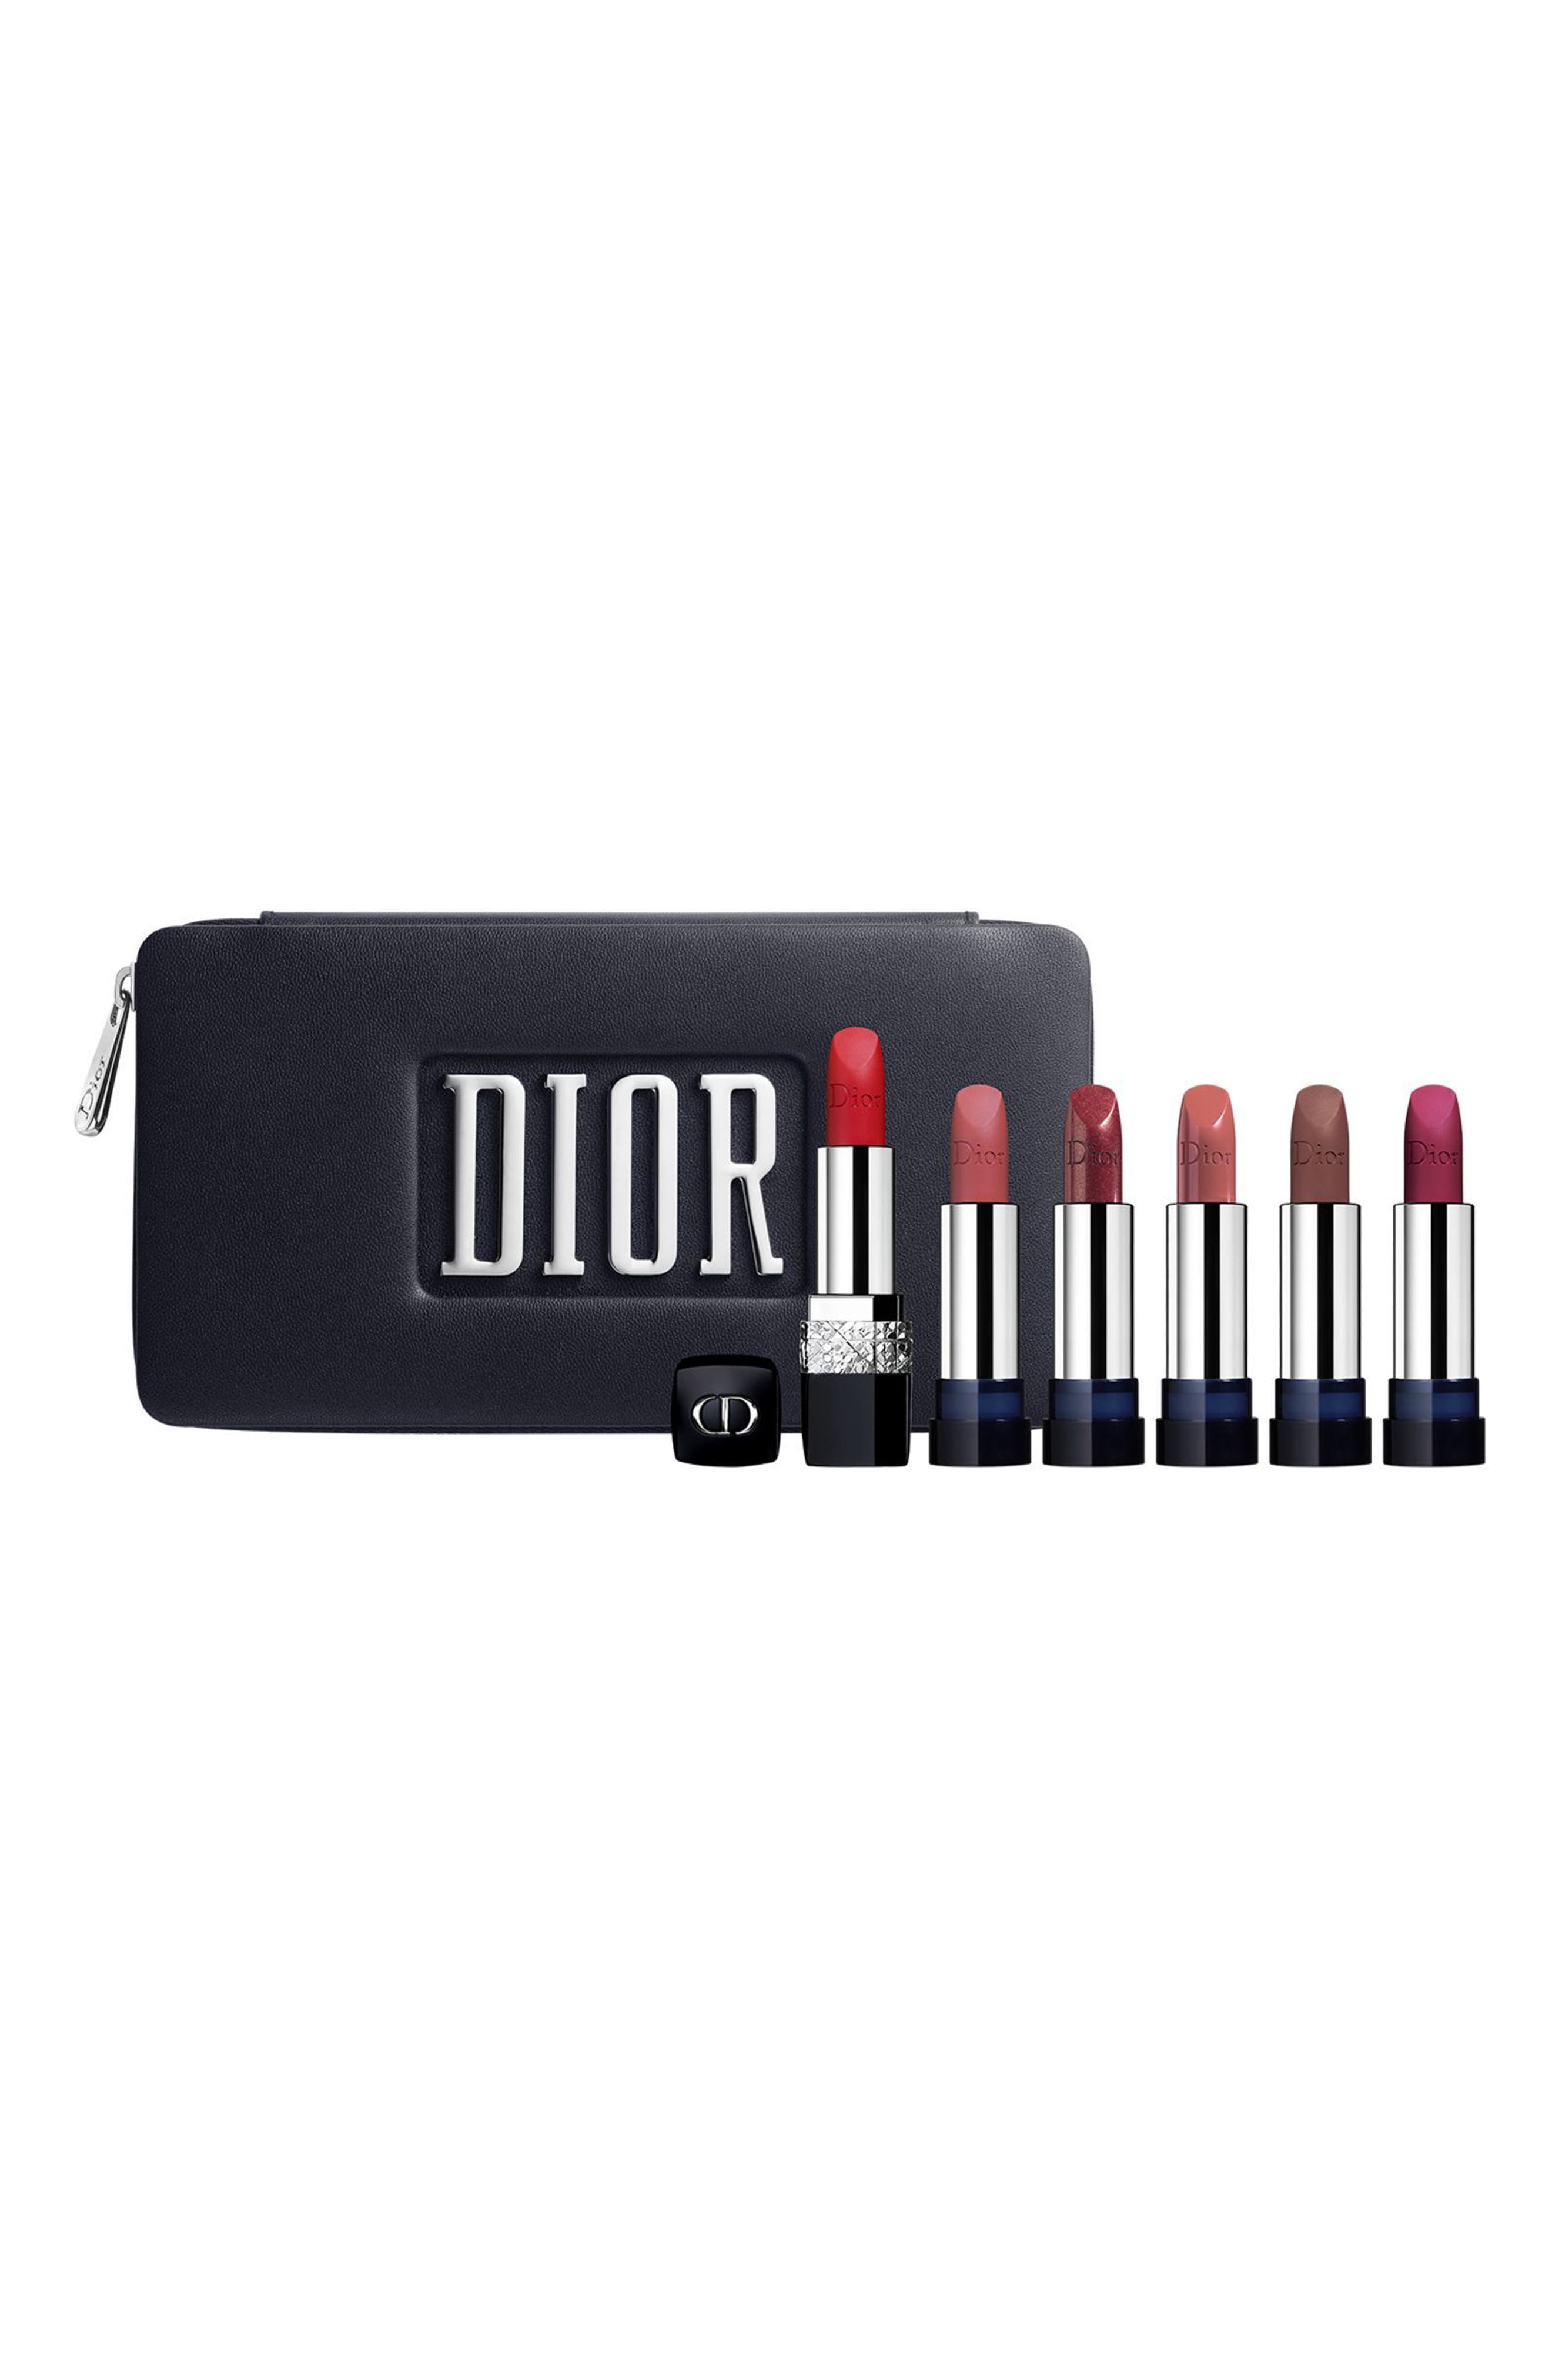 dior lipstick refill set